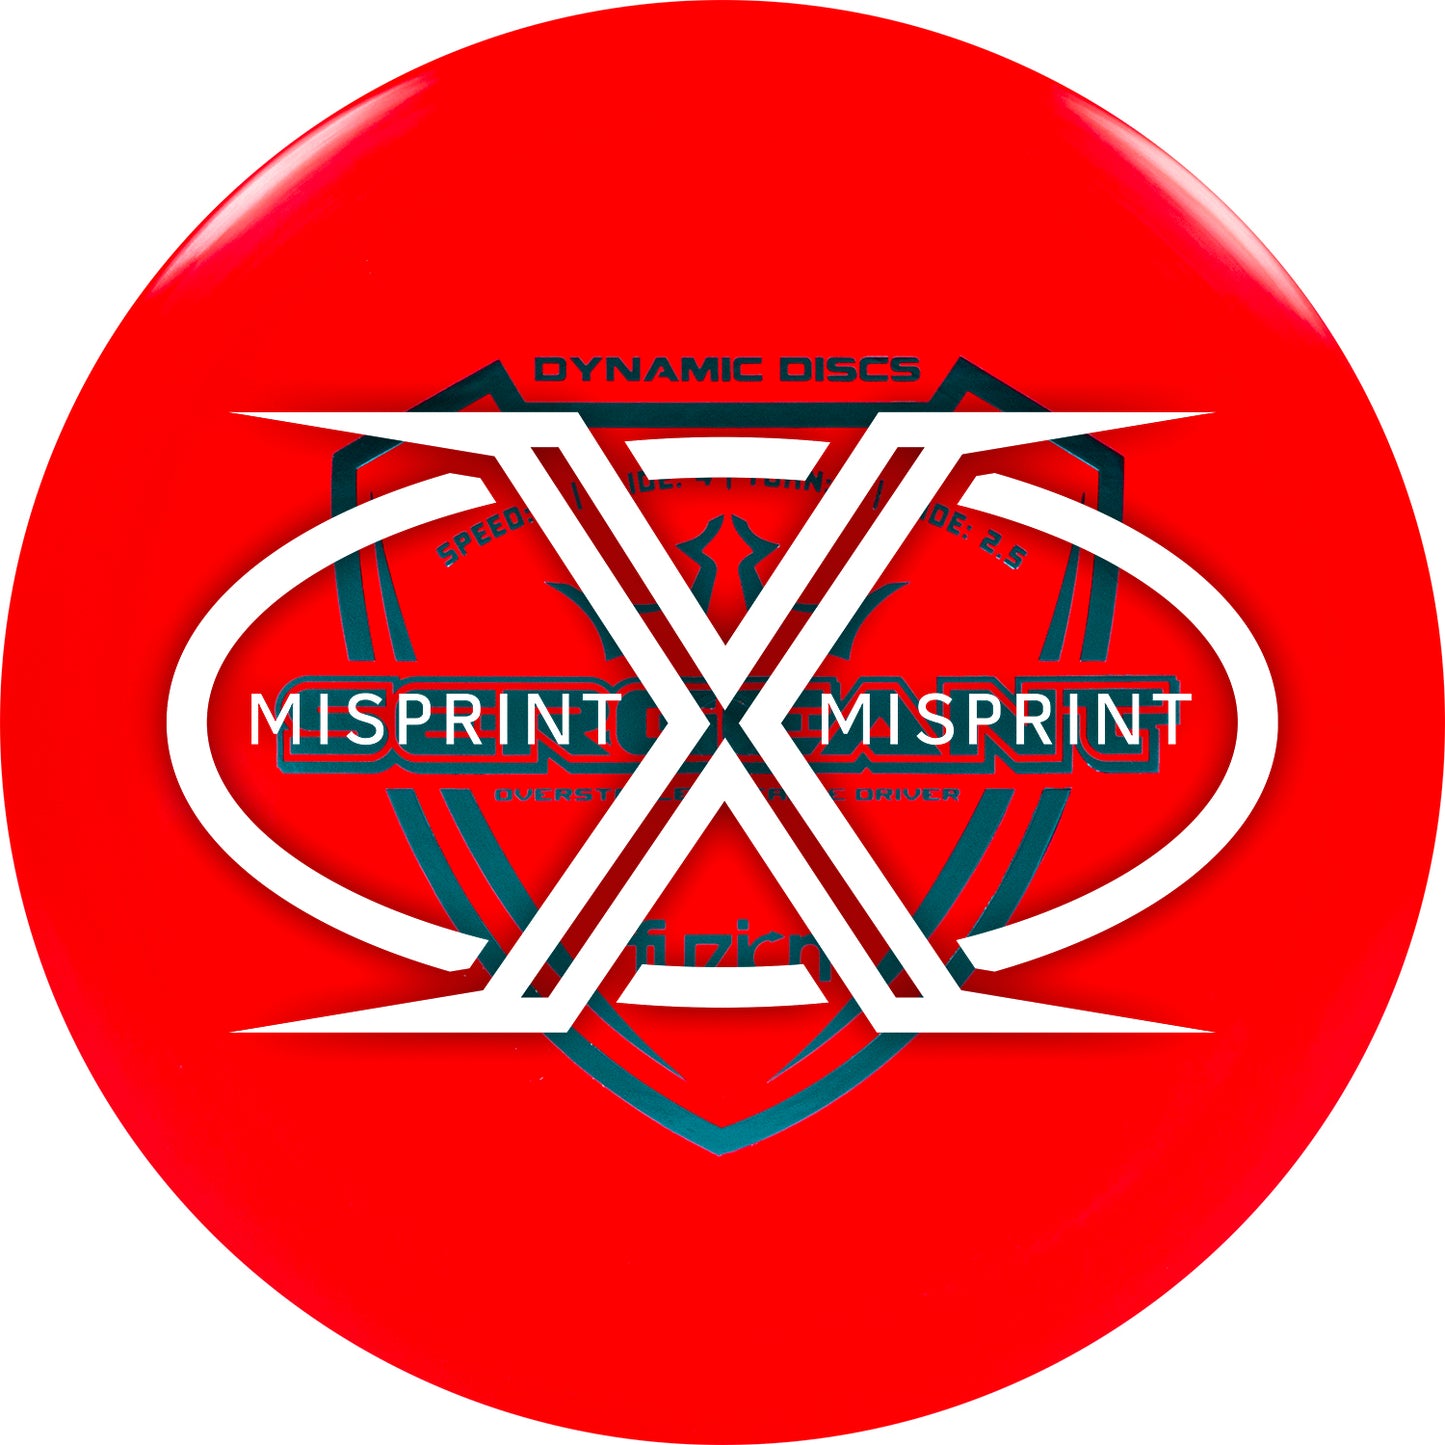 Misprint Dynamic Discs Fuzion Sergeant